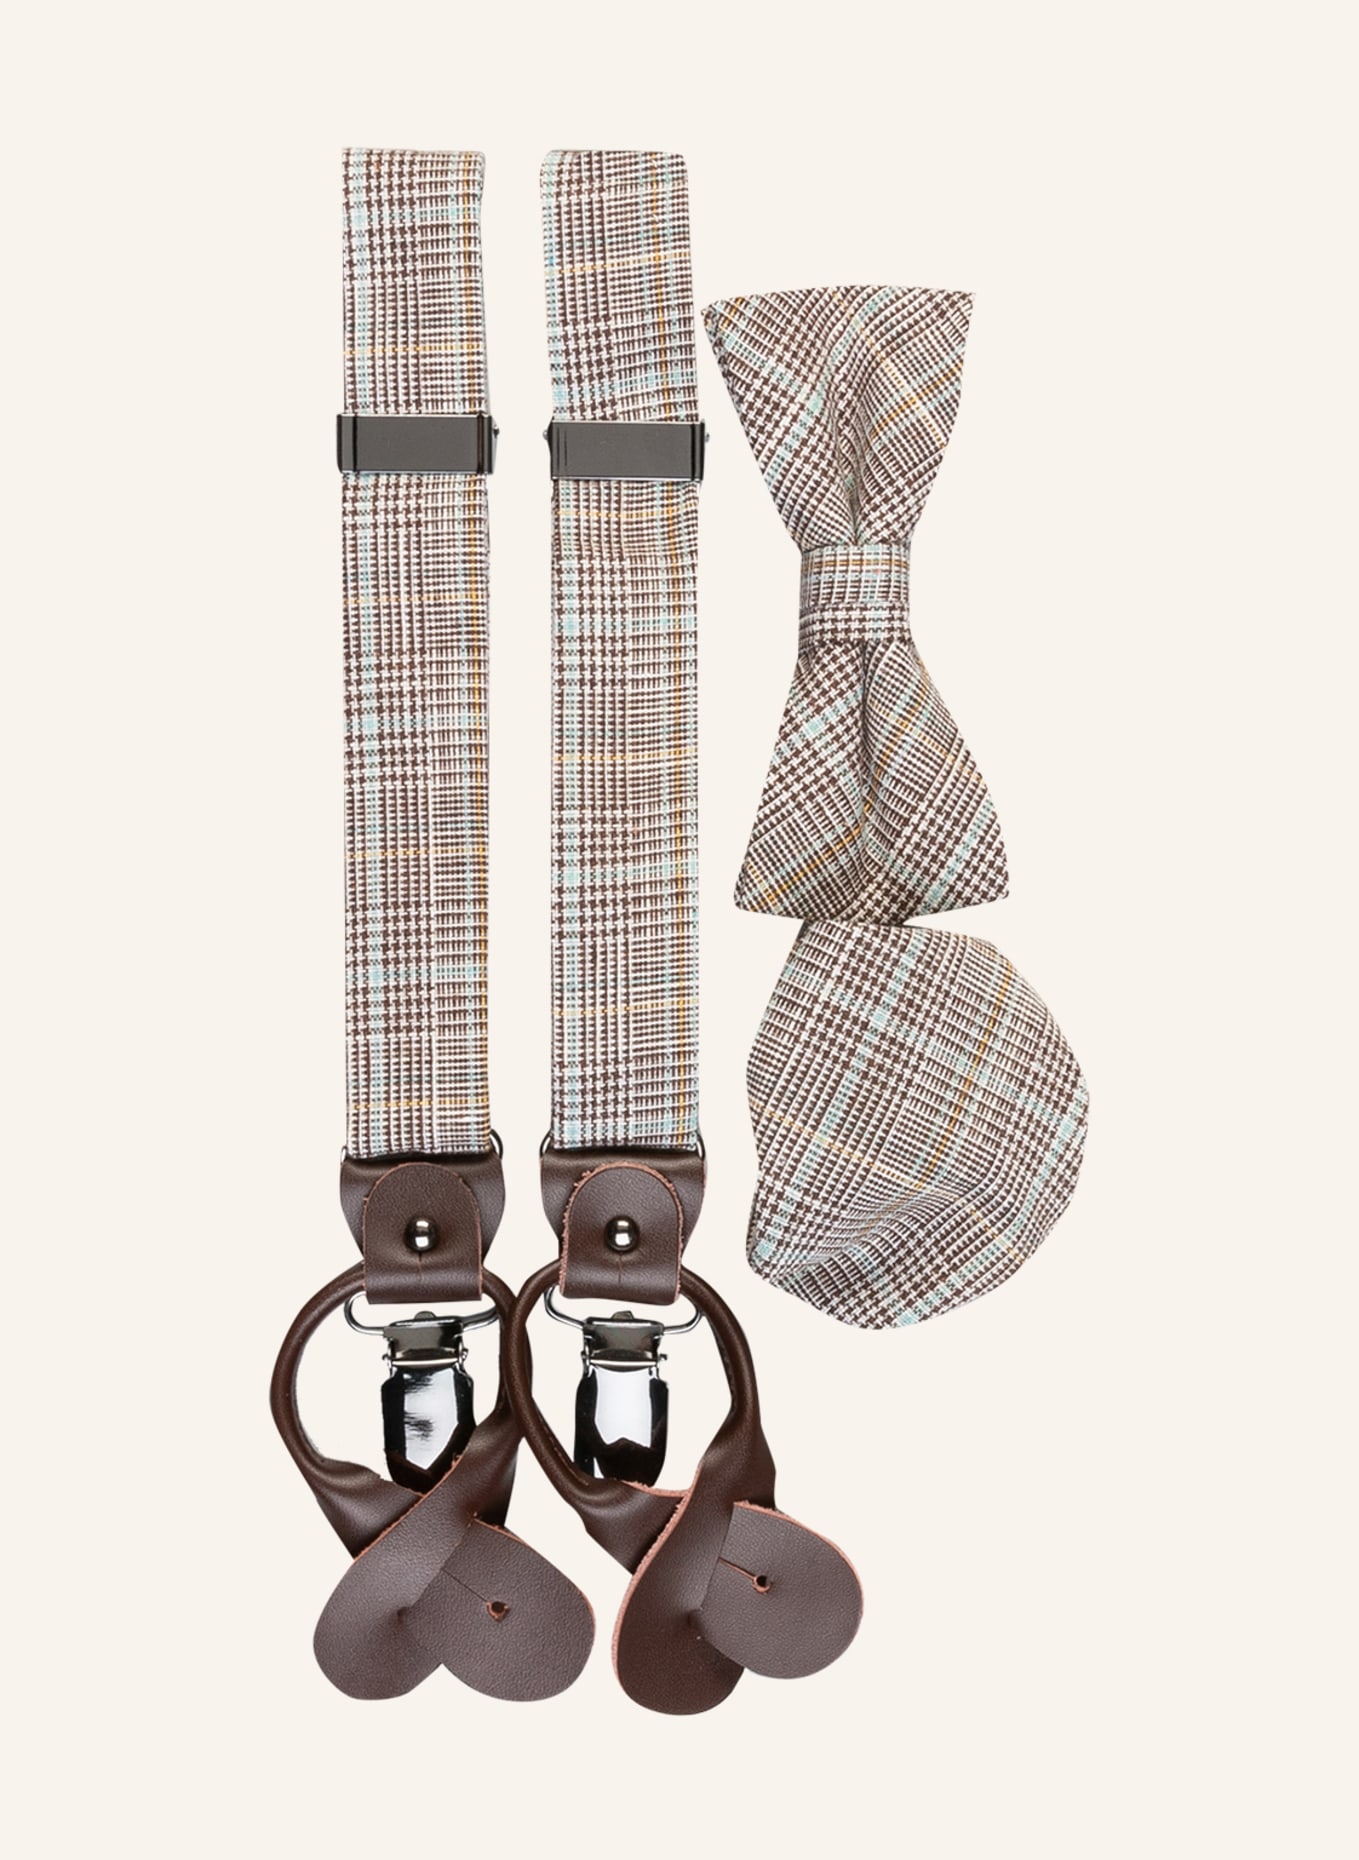 Günstiger Versand im Ausland! MONTI Set SANDRO: Suspenders, bow brown/ in mint dark tie and white/ handkerchief pocket